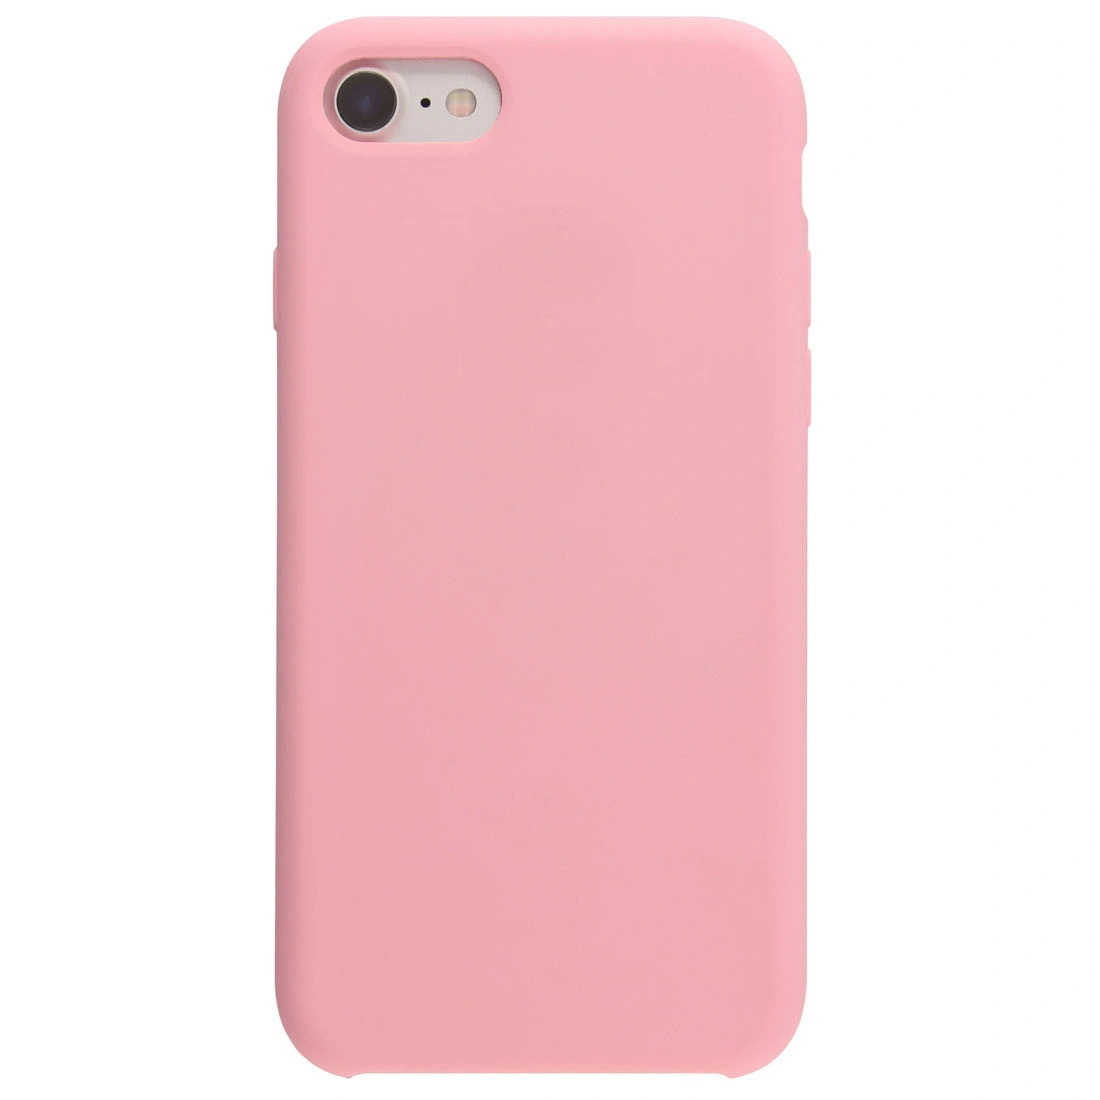 фото Чехол накладка для iphone 8 с подкладкой из микрофибры / для айфон 8 / розовый qvatra